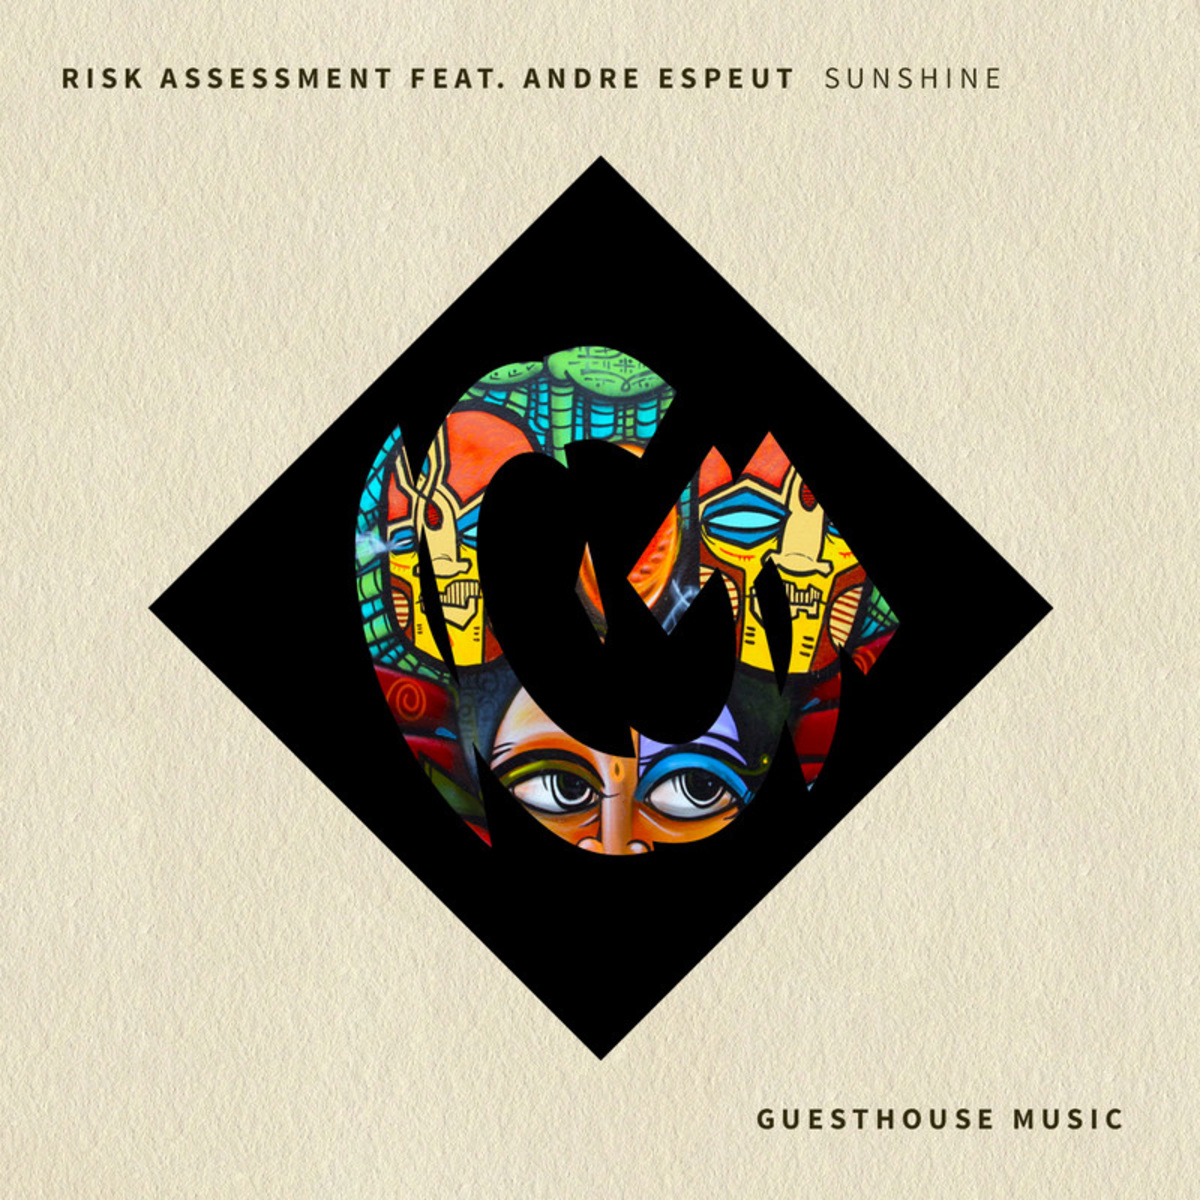 Risk Assessment ft Andre Espeut - Sunshine / Guesthouse Music